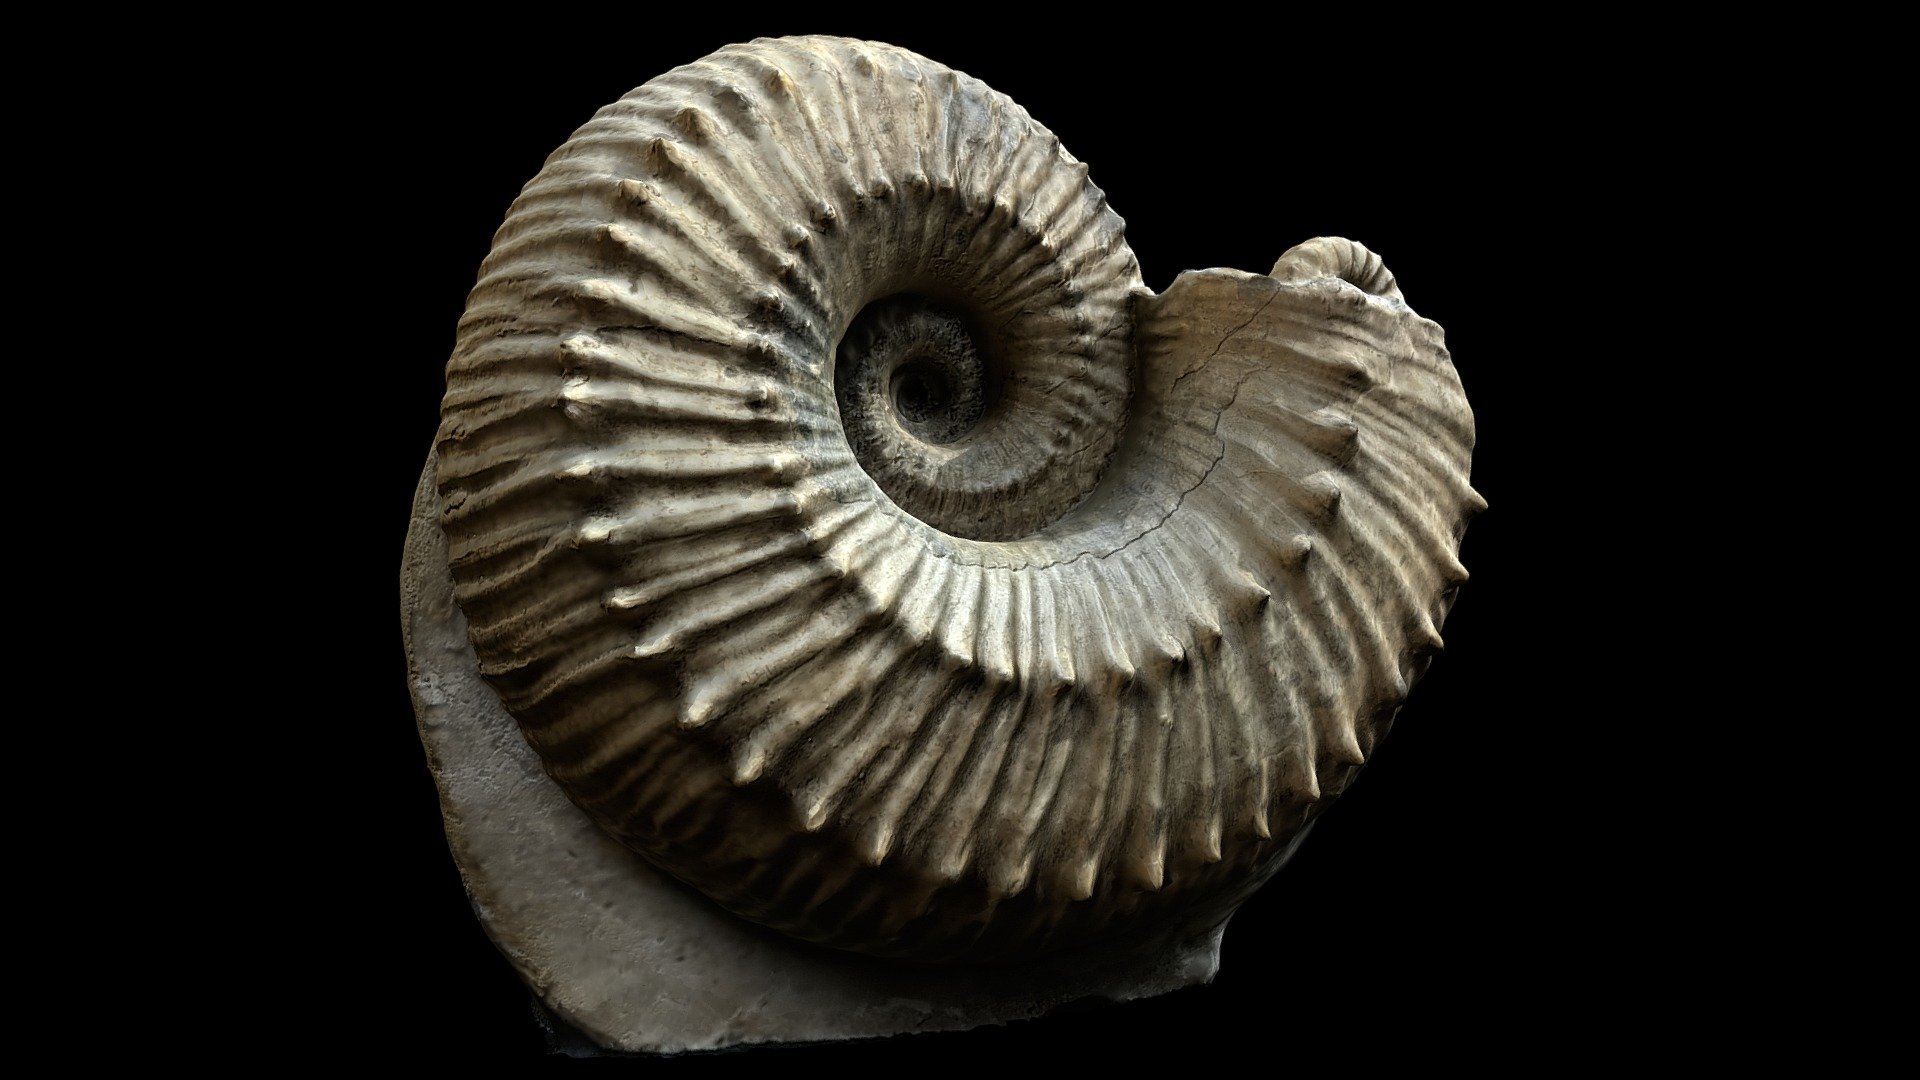 Liparoceras divaricosta Trueman Ammonite Fossil - 3D model by